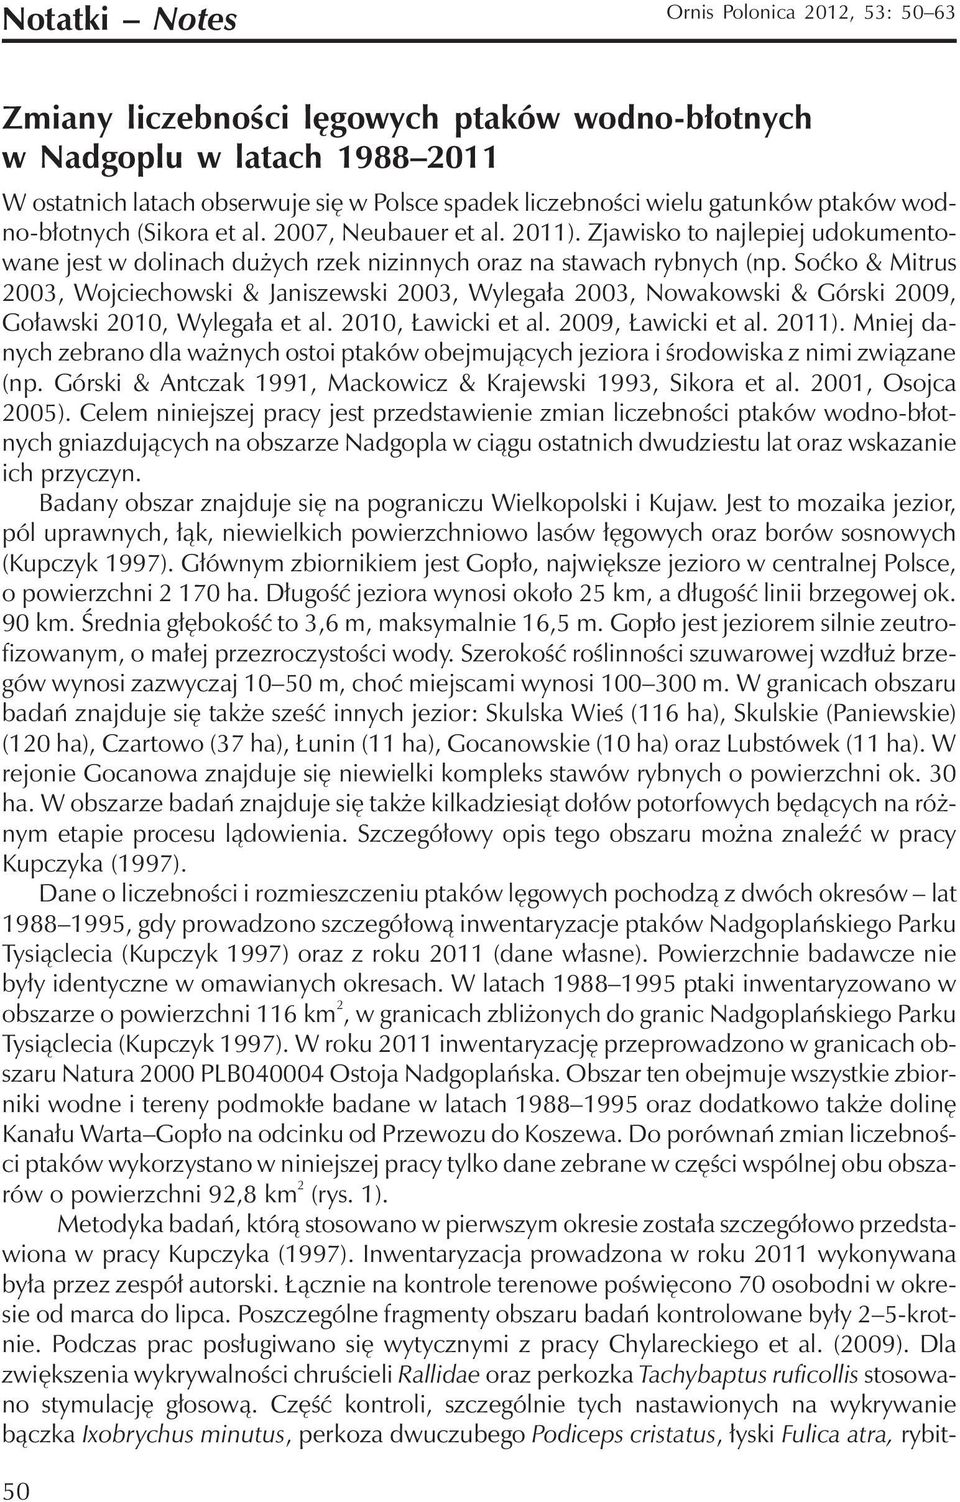 Soćko & Mitrus 2003, Wojciechowski & Janiszewski 2003, Wylegała 2003, Nowakowski & Górski 2009, Goławski 2010, Wylegała et al. 2010, Ławicki et al. 2009, Ławicki et al. 2011).